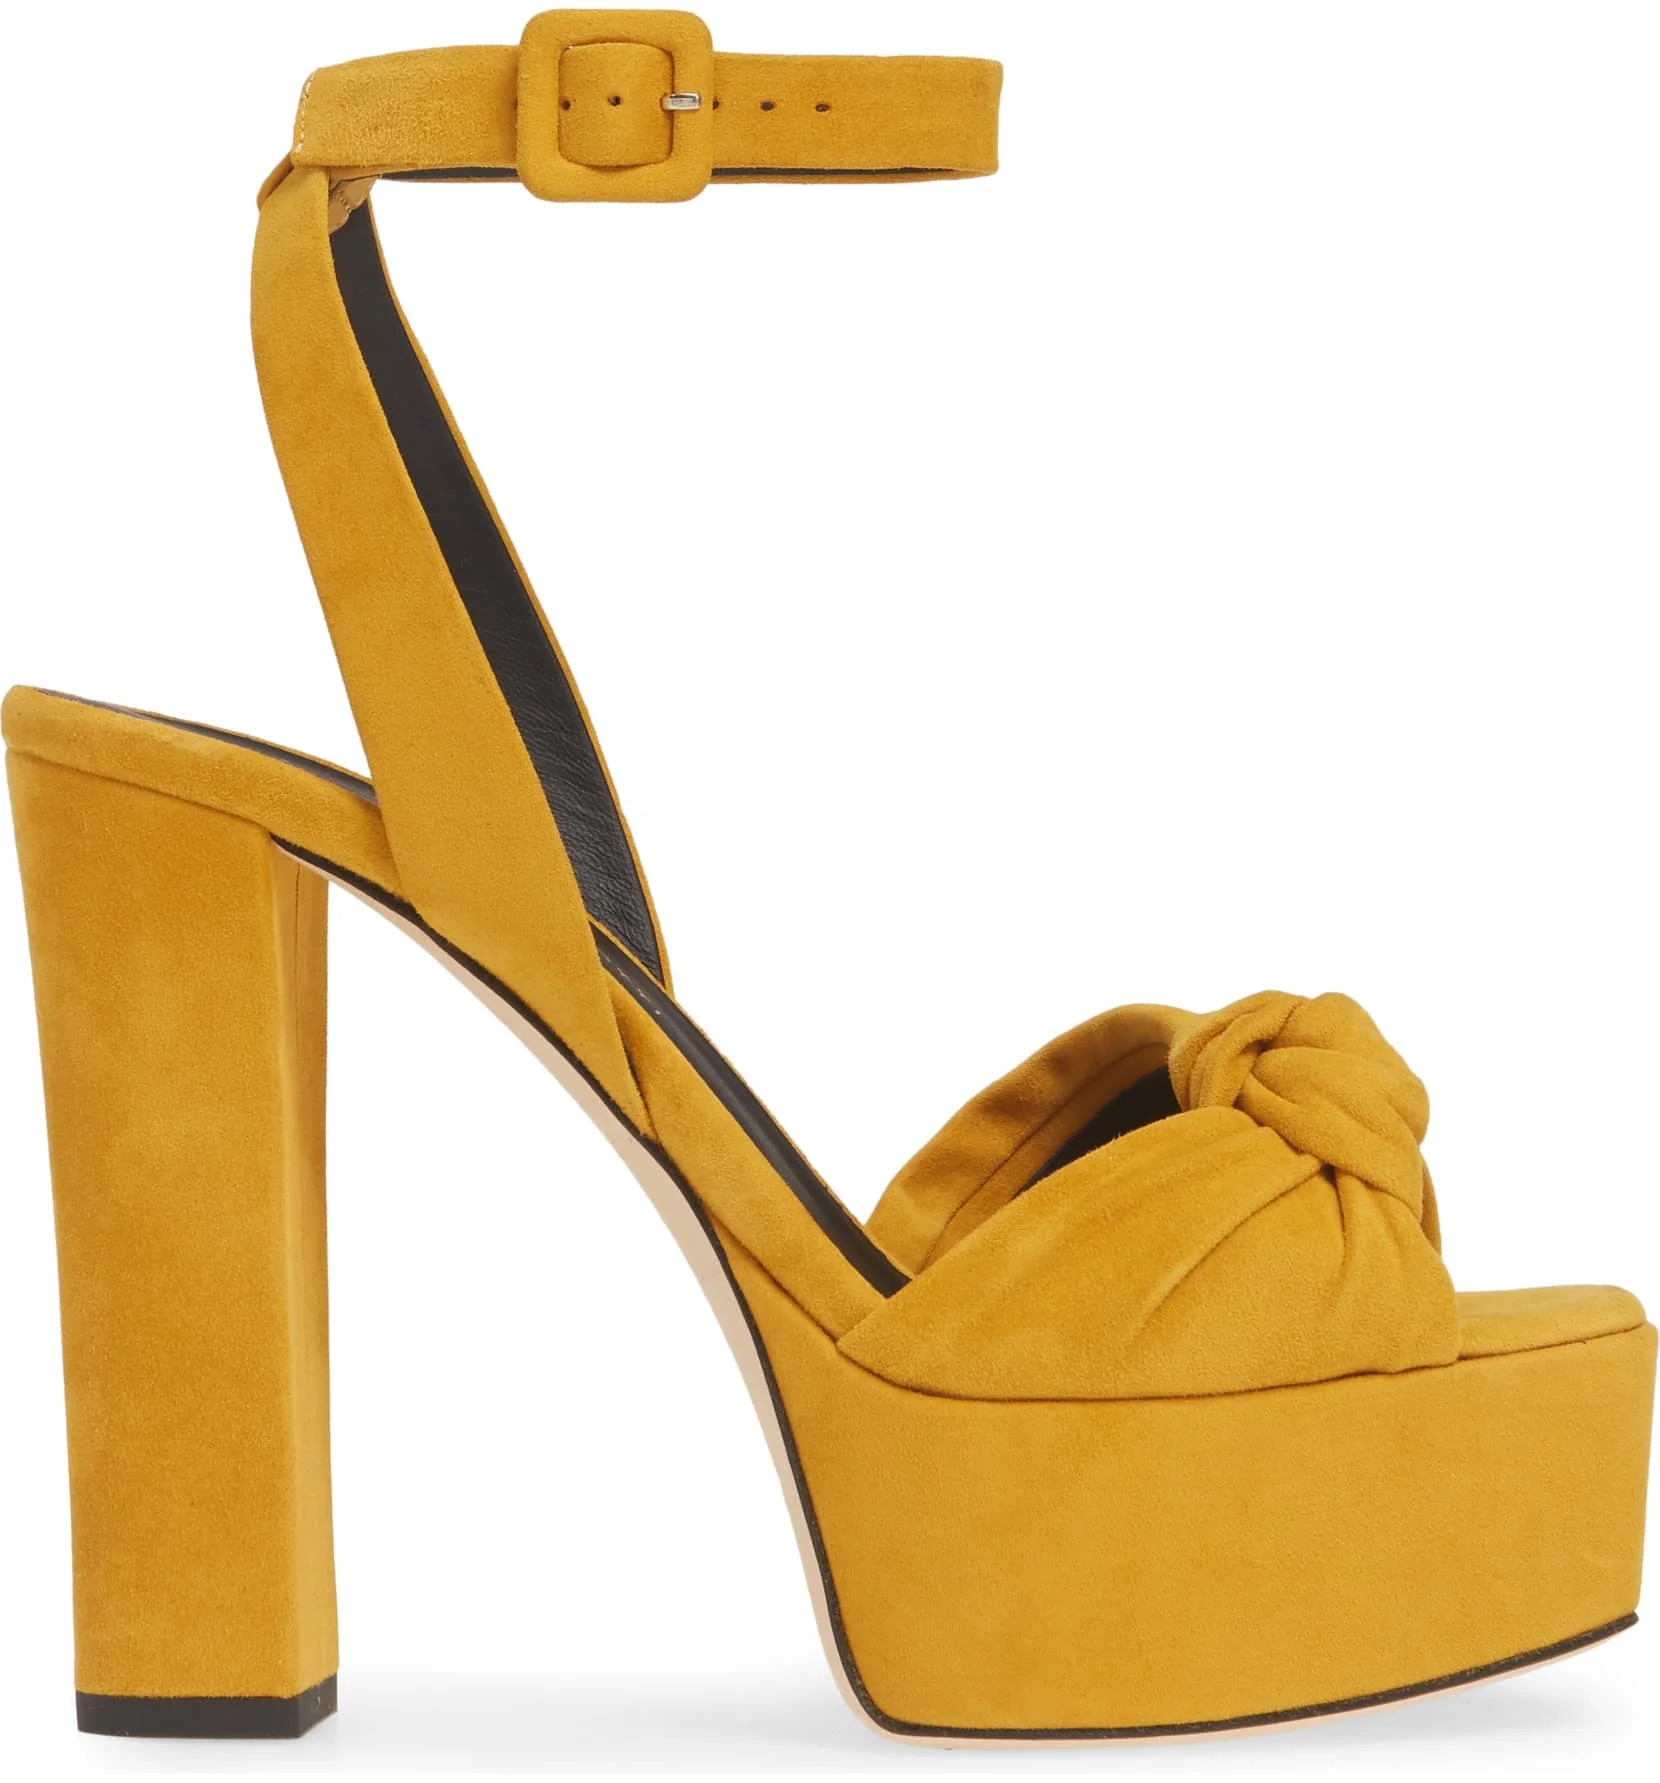 Nuevo Diseño De Jengibre Amarillo Zapatos De Mujer De Plataforma De Gamuza Zapatos De Tacón Alto Tacones De Plataforma Peep-toe Mujer Sandalias - Buy Zapatos De Tacón Alto Plataforma,Zapatos